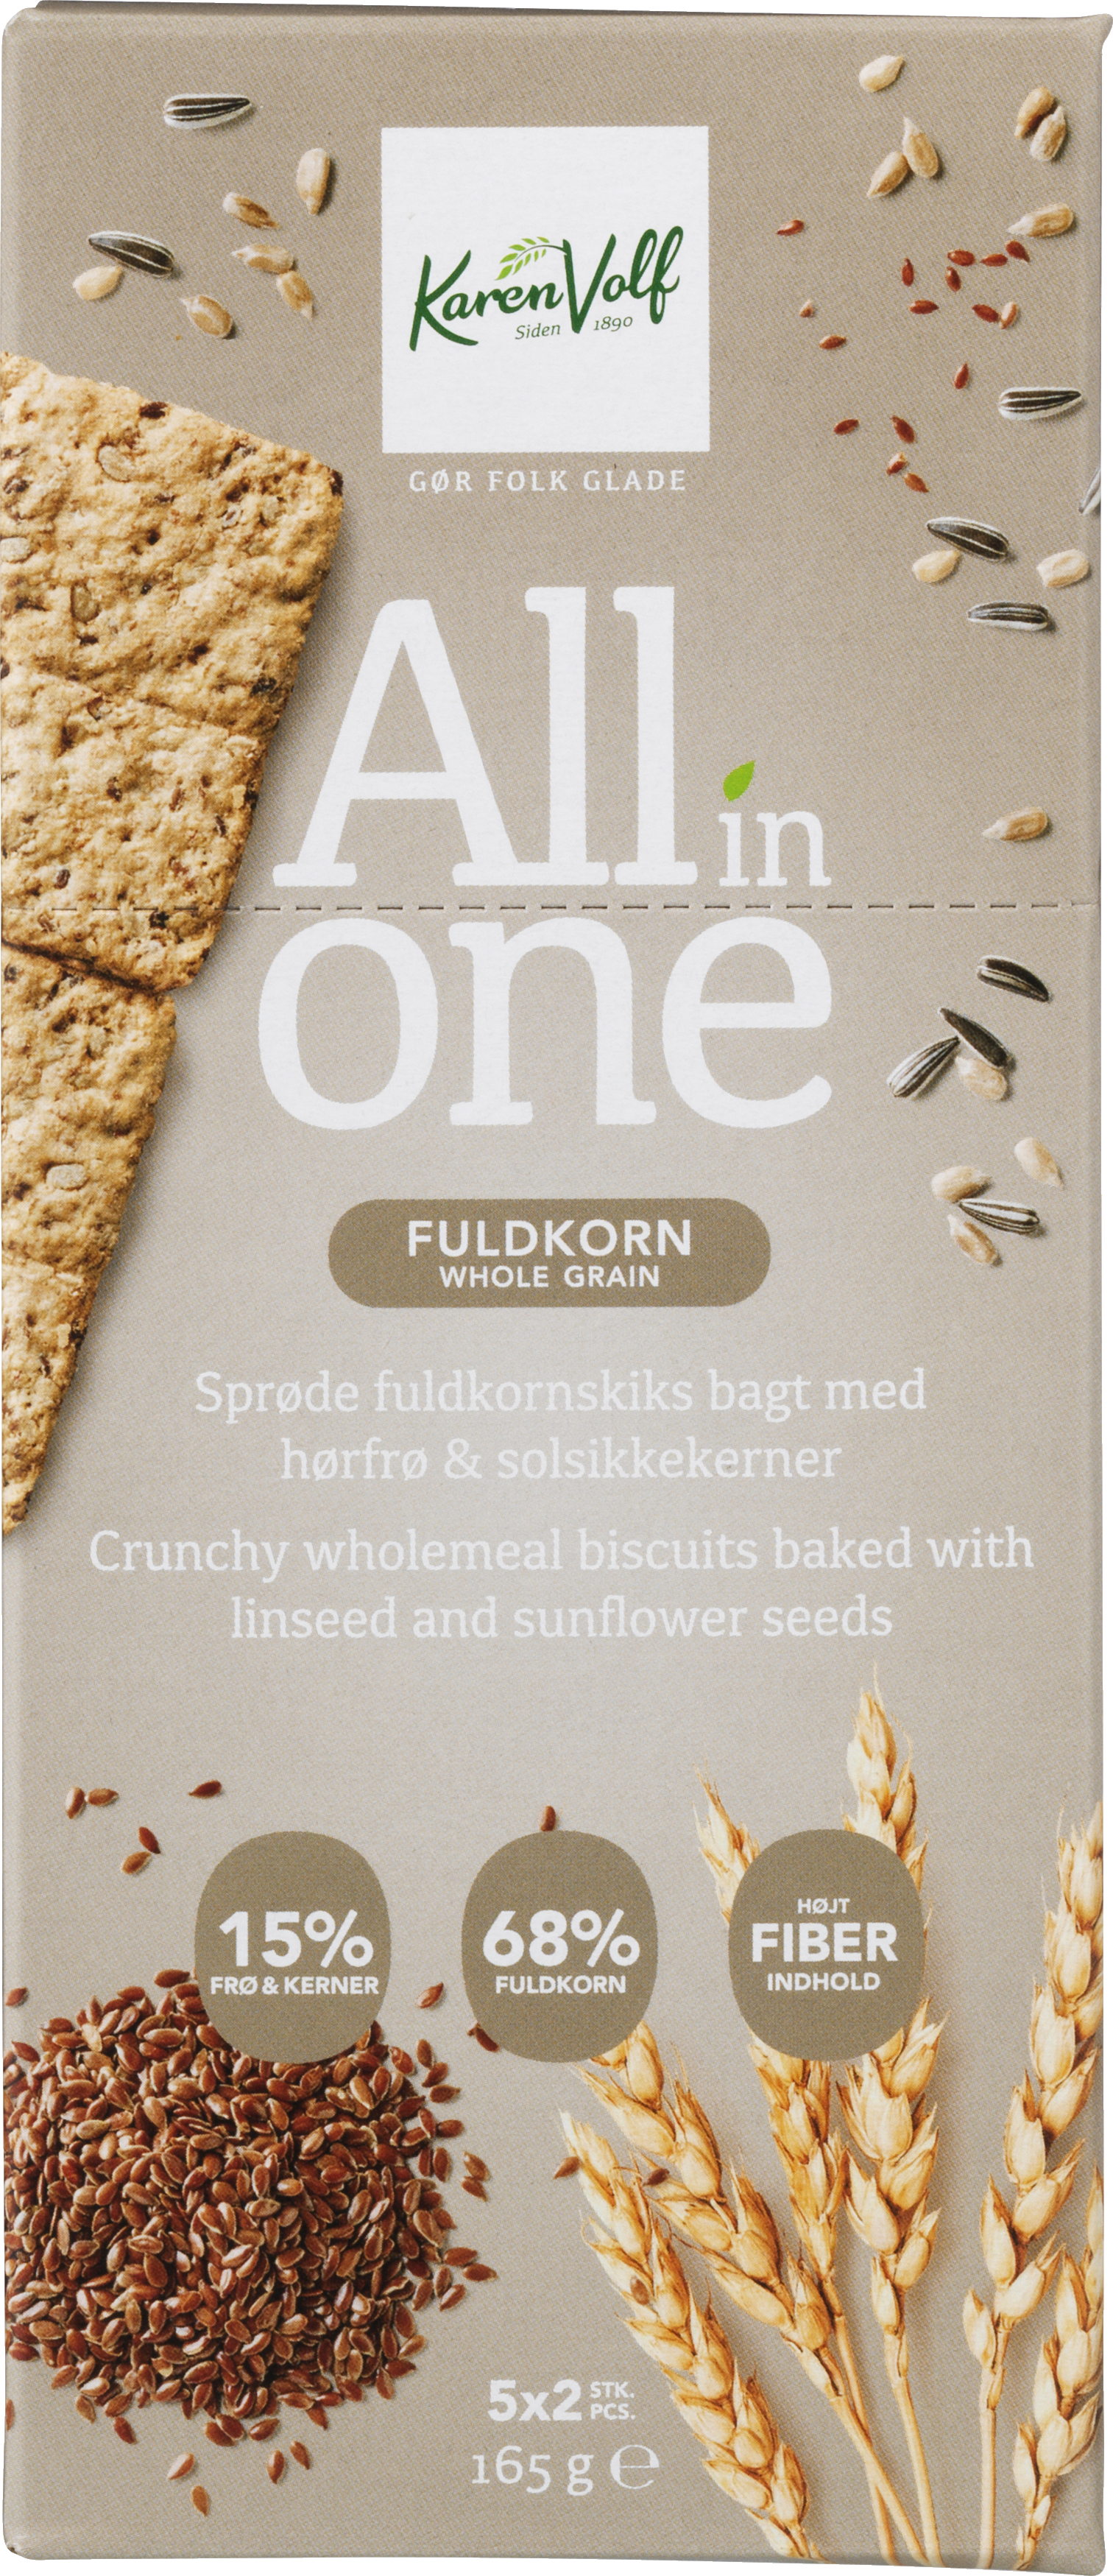 All in One Kiks Fuldkorn 165 g. - DATOVARER TILBUD VIN MERE .DK